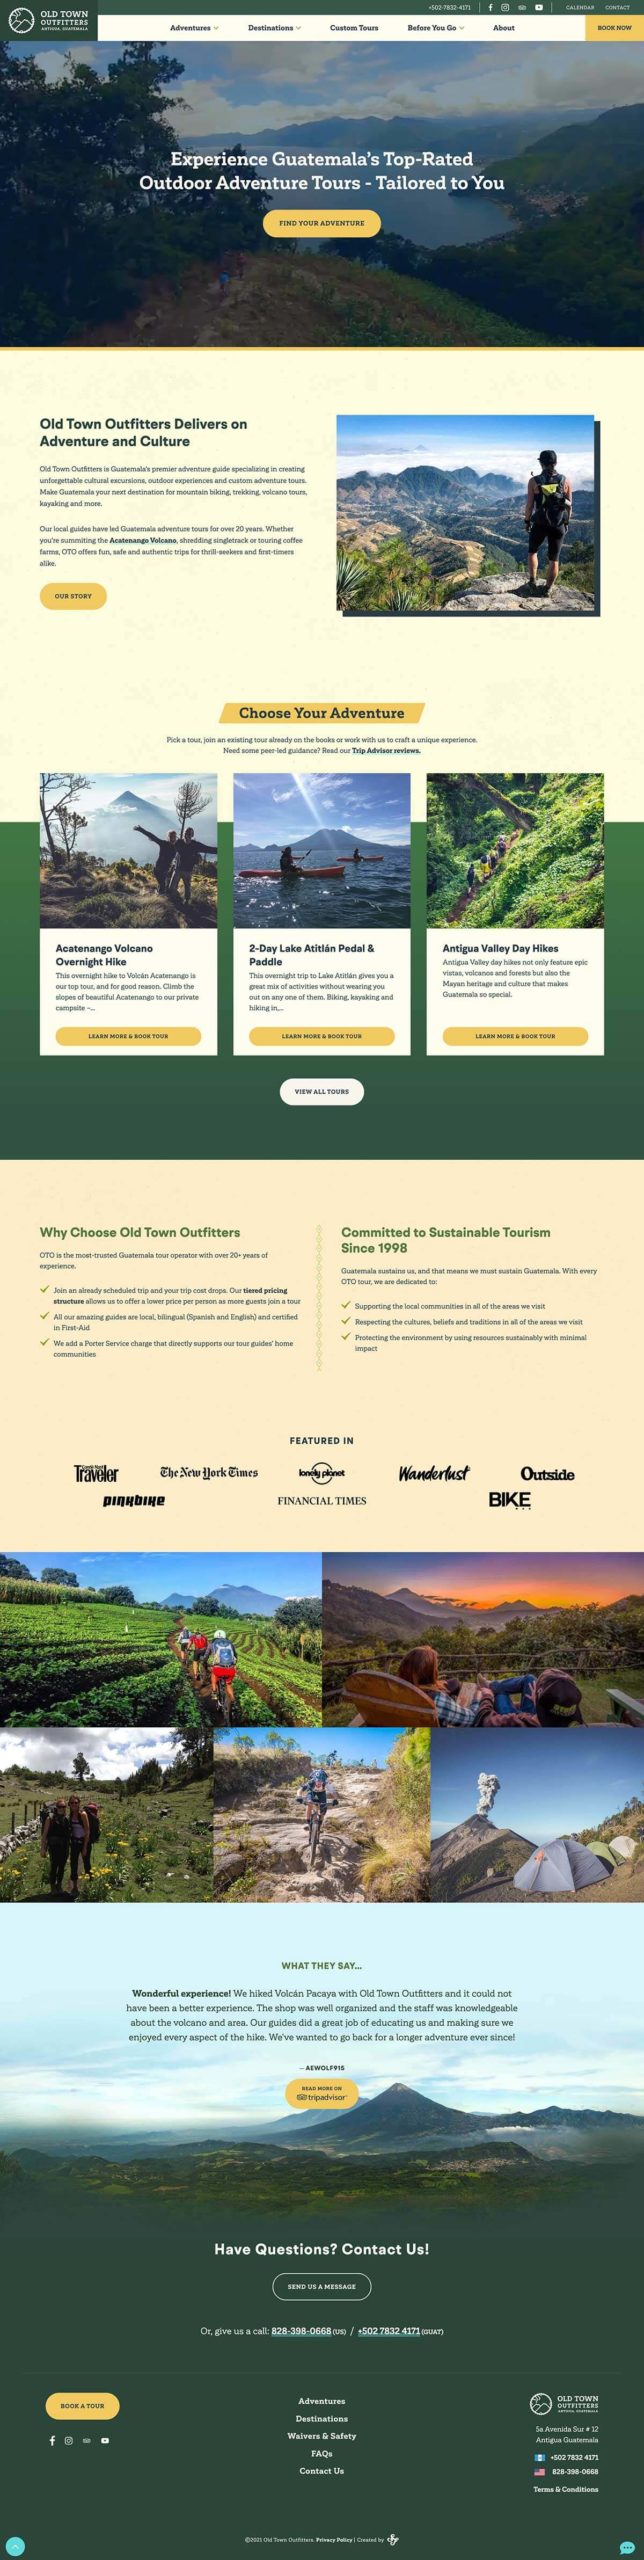 OTO full home page design